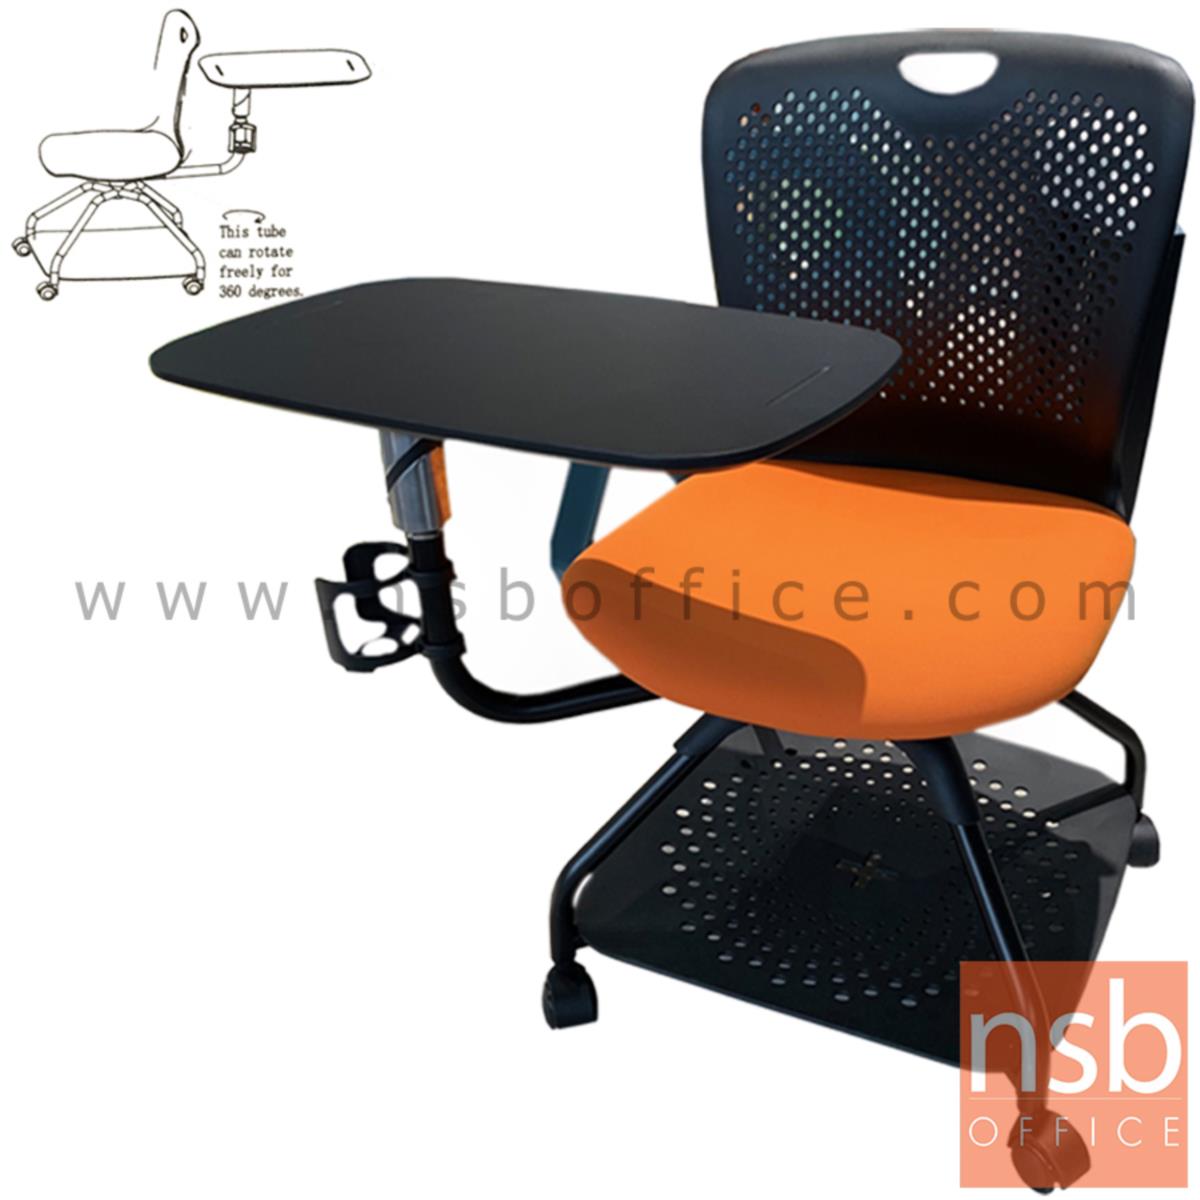 เก้าอี้เลคเชอร์ รุ่น Digory (ดิกอรี่)  โครงขาเหล็กล้อเลื่อน ฐานด้านล่างวางกระเป๋าได้